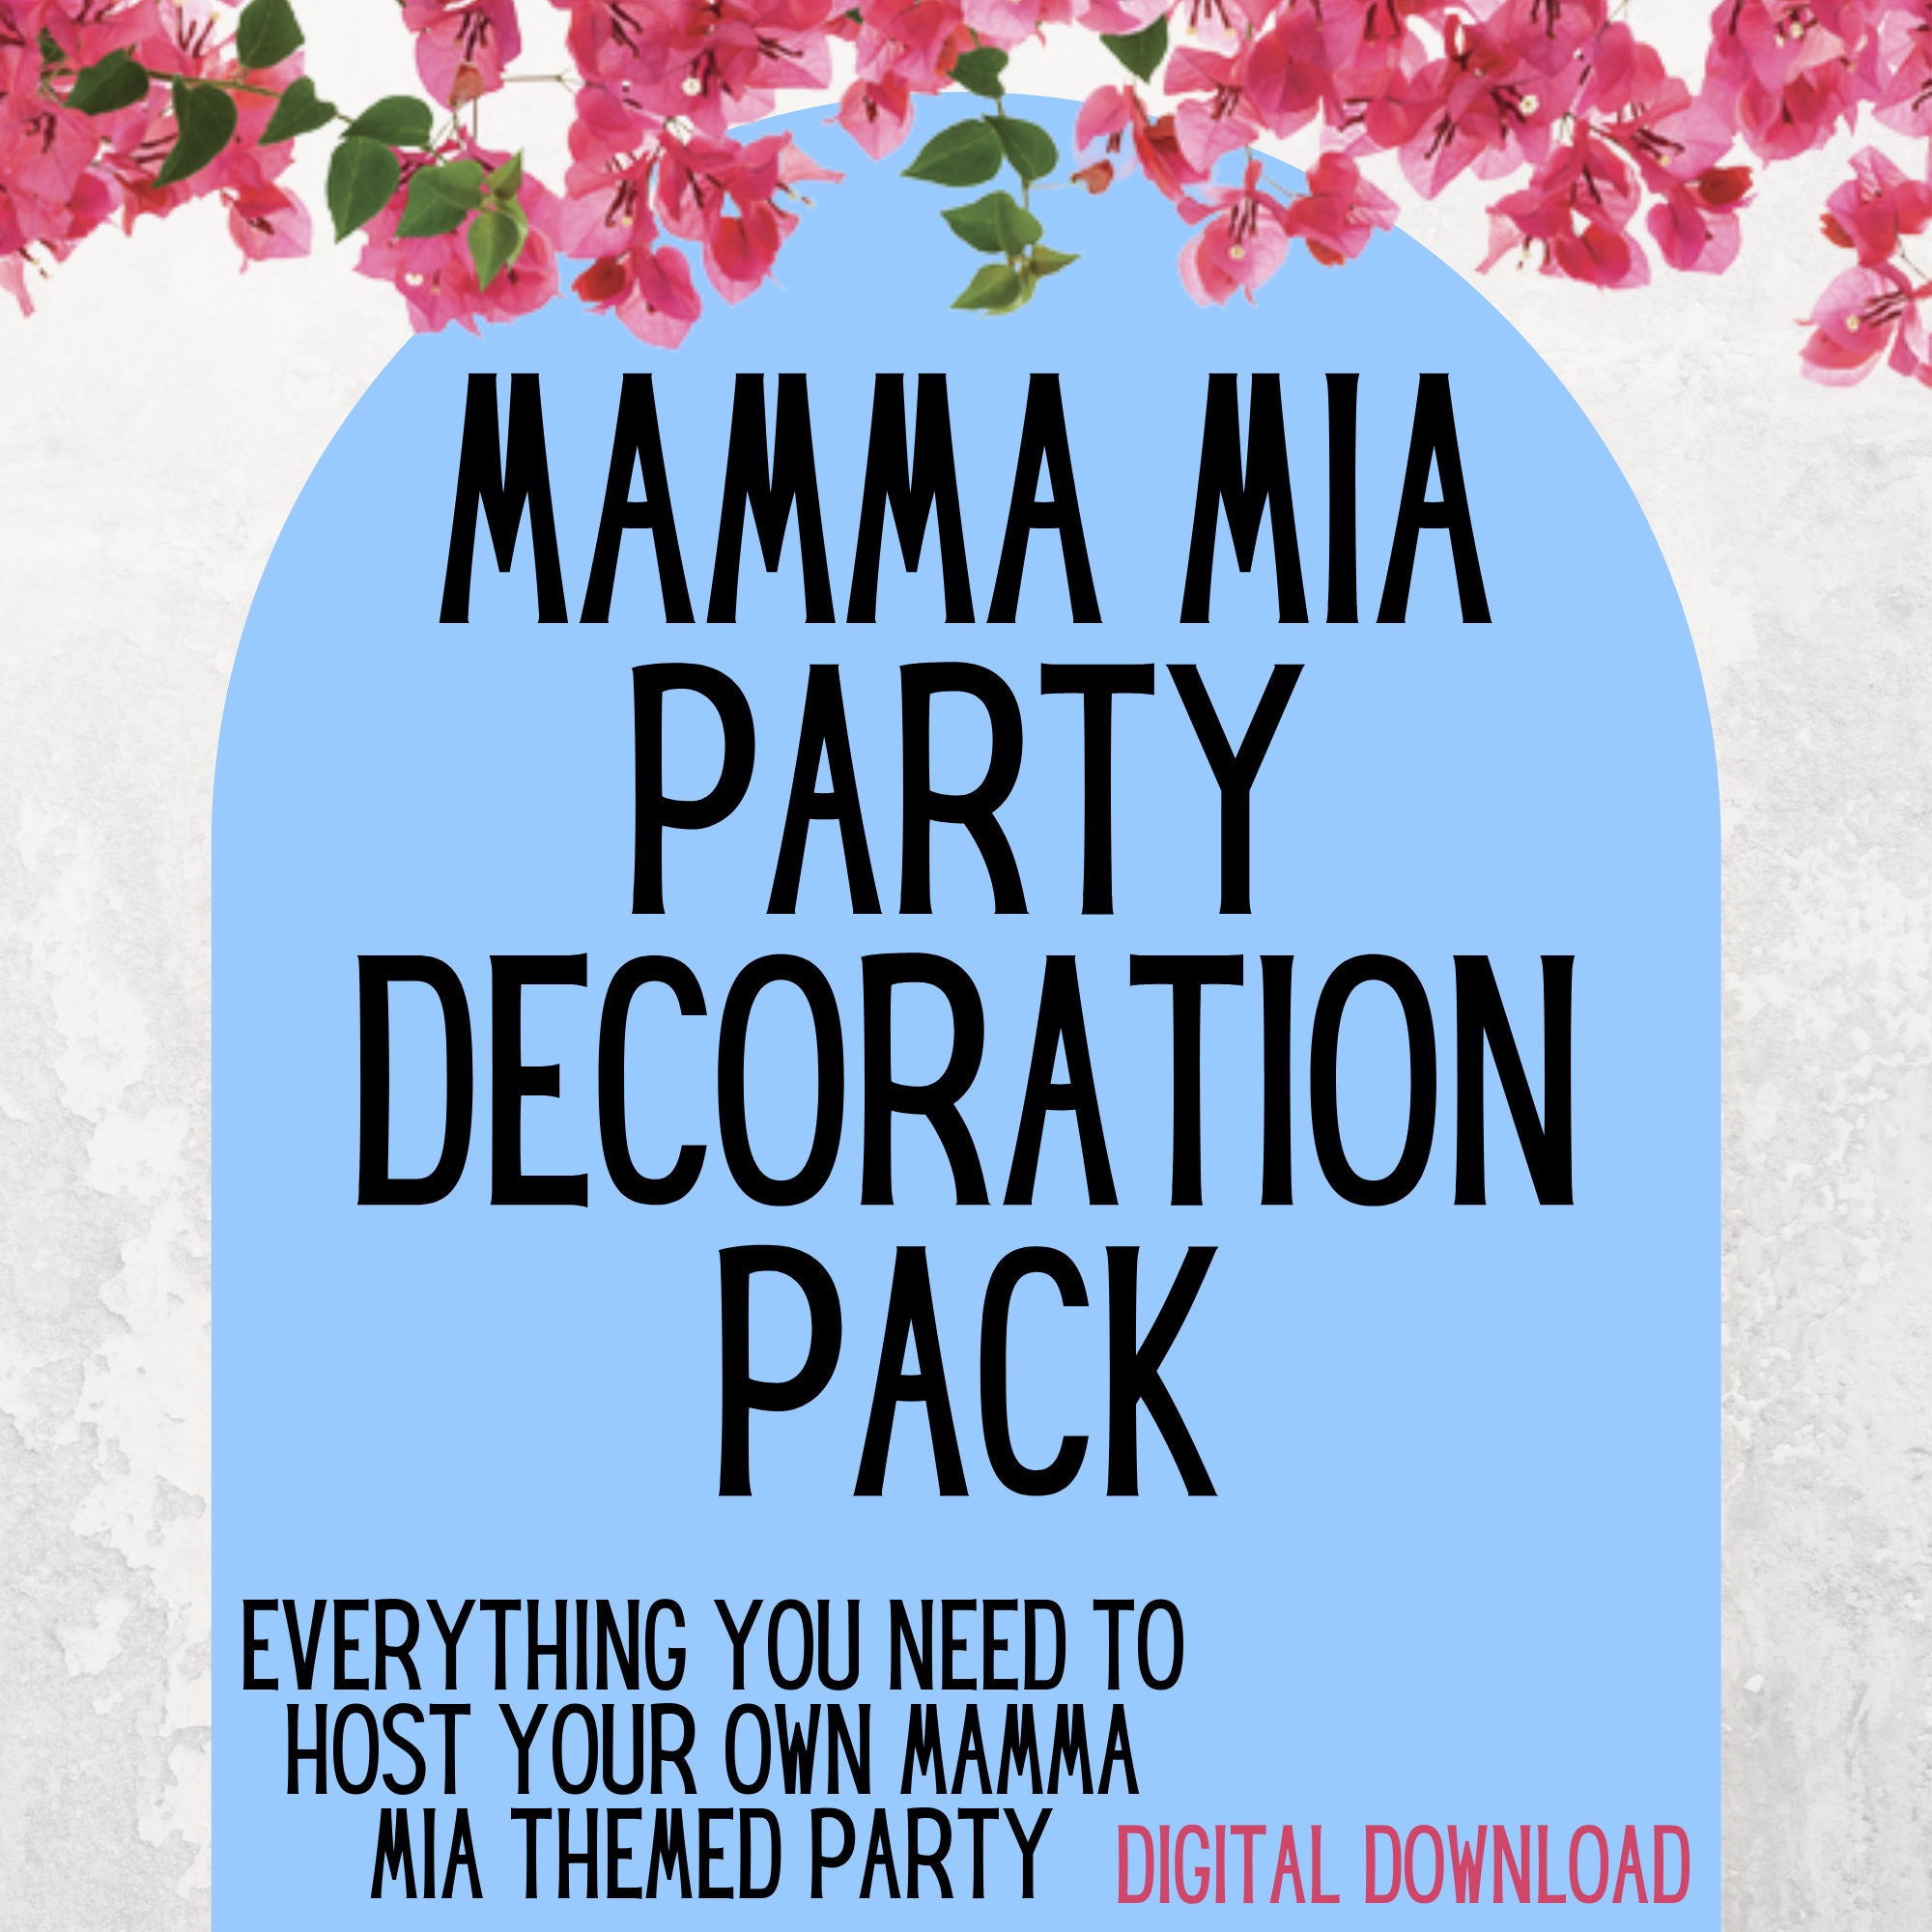 Mamma Mia themed 2nd birthday, Mamma Mia themed party